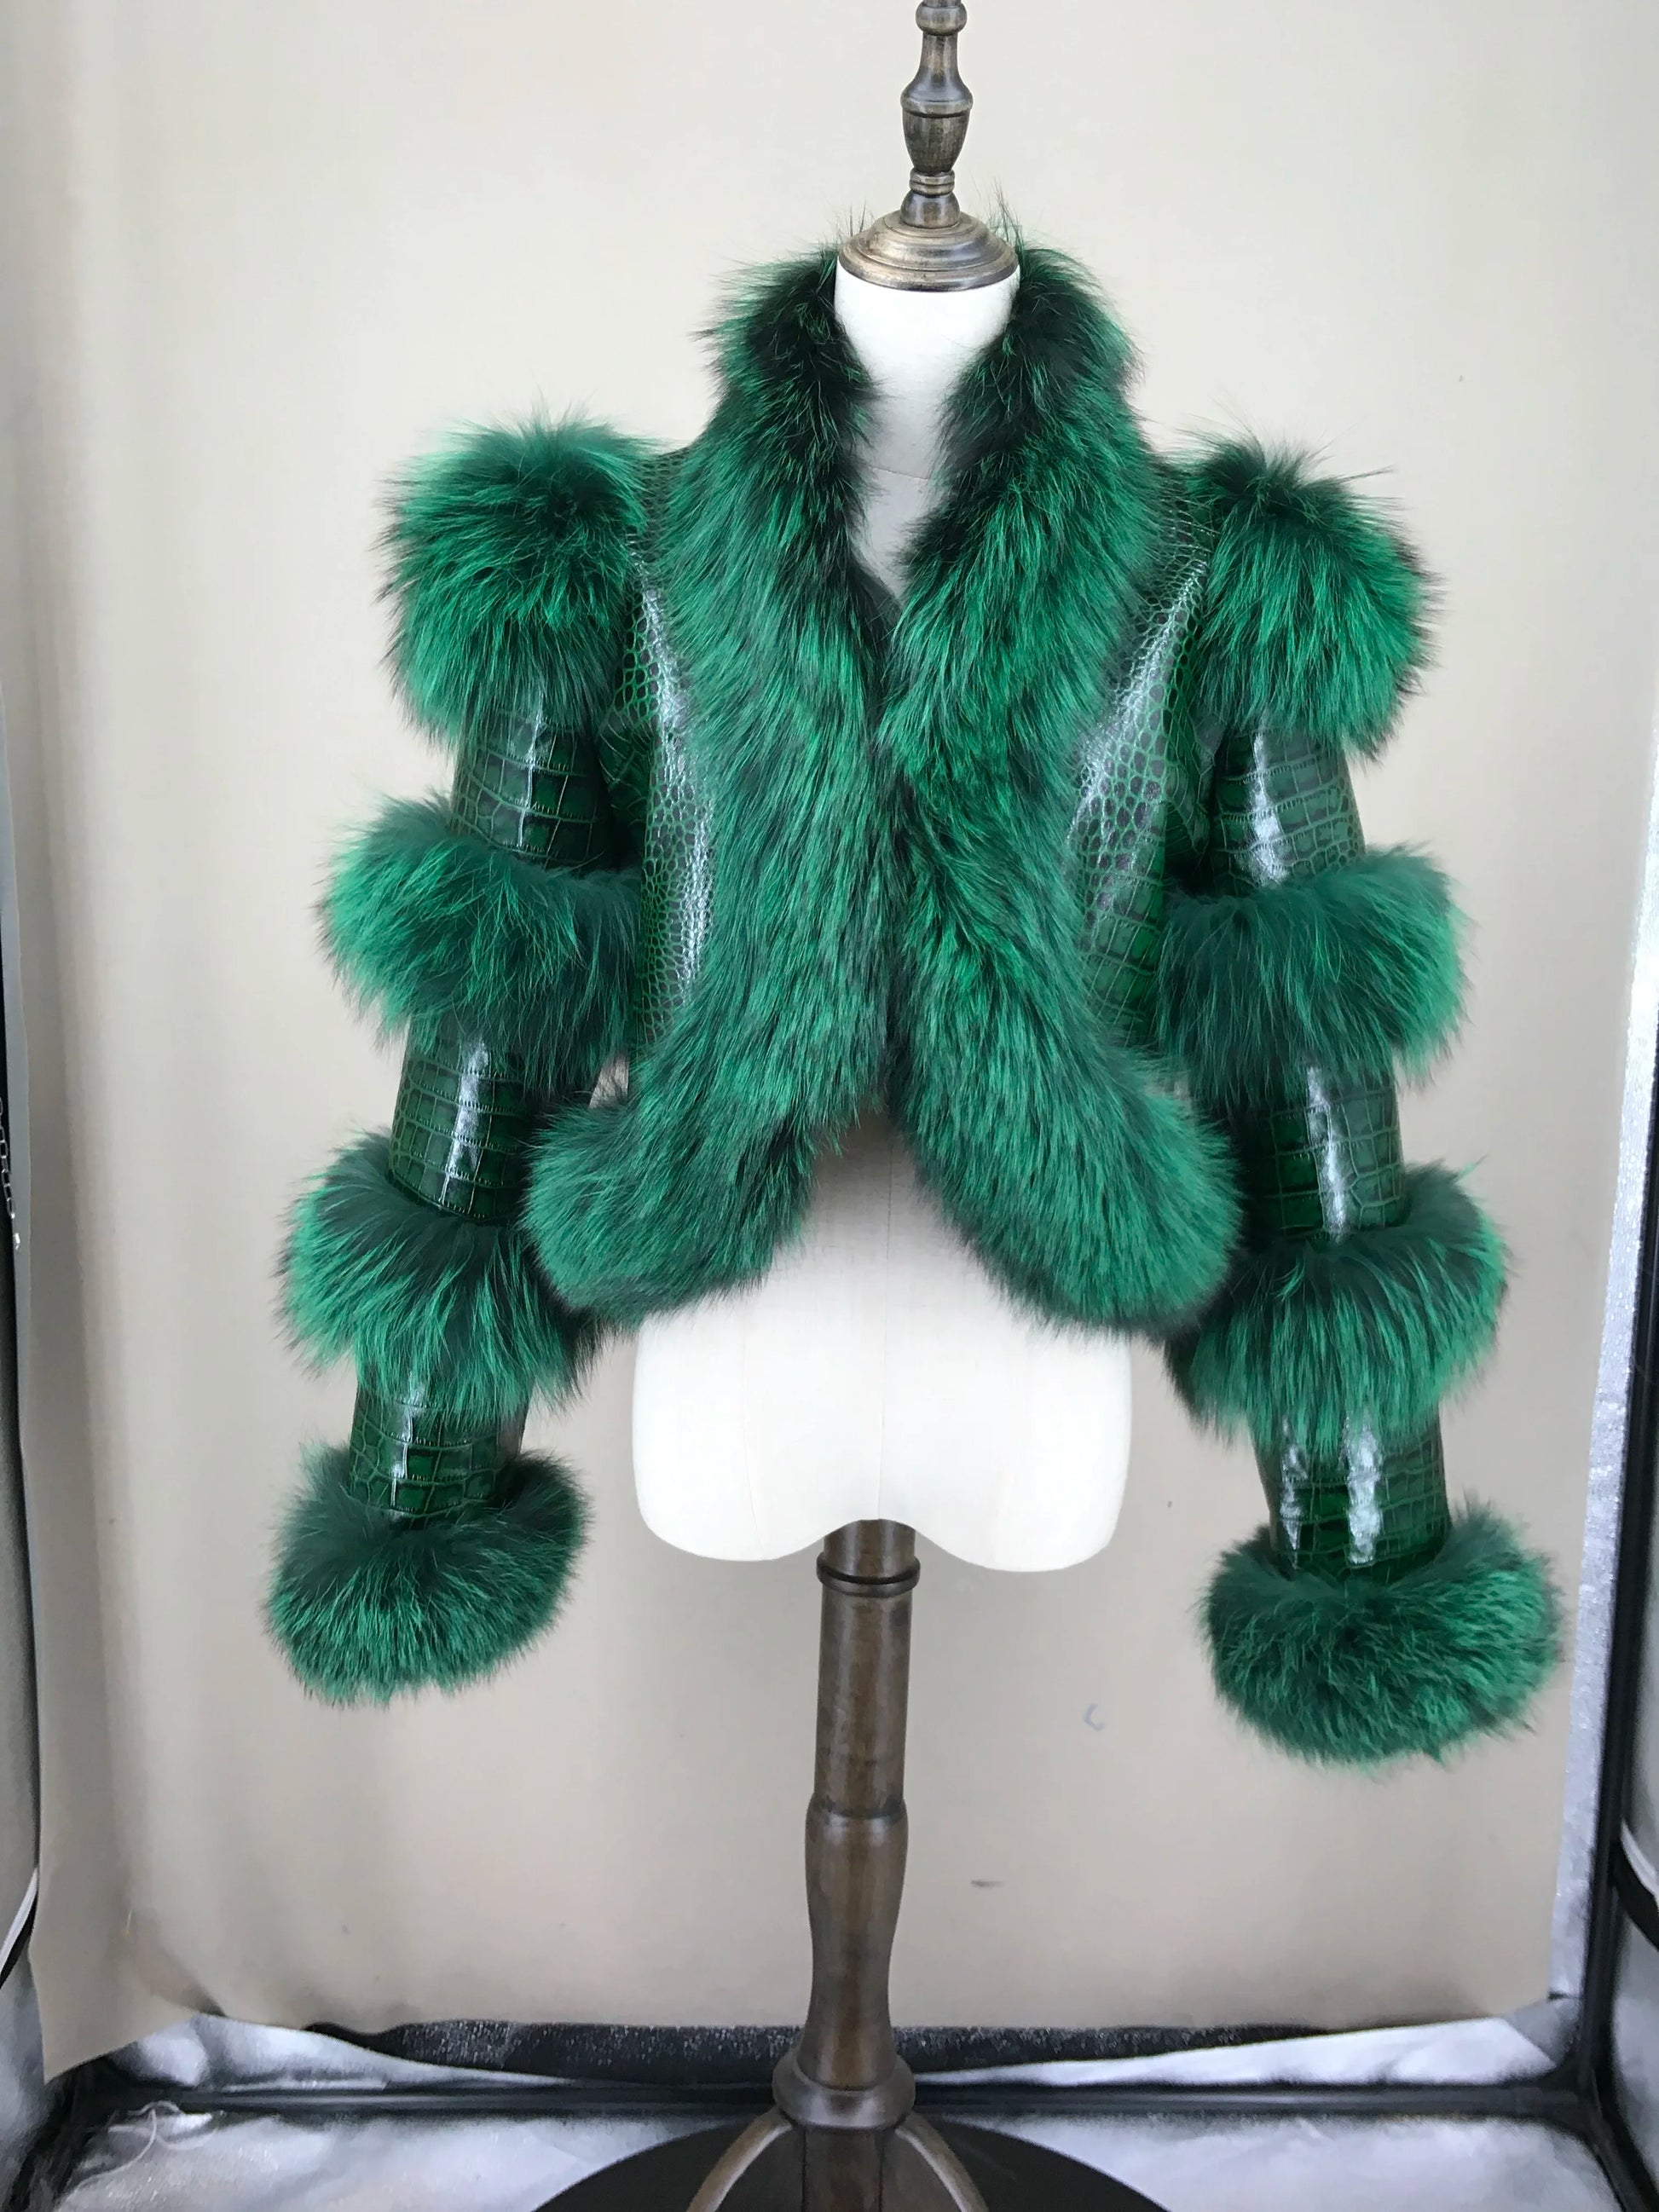 TEEK - Natural Fluff Tier Sleeve Crop Coat JACKET theteekdotcom green XS 